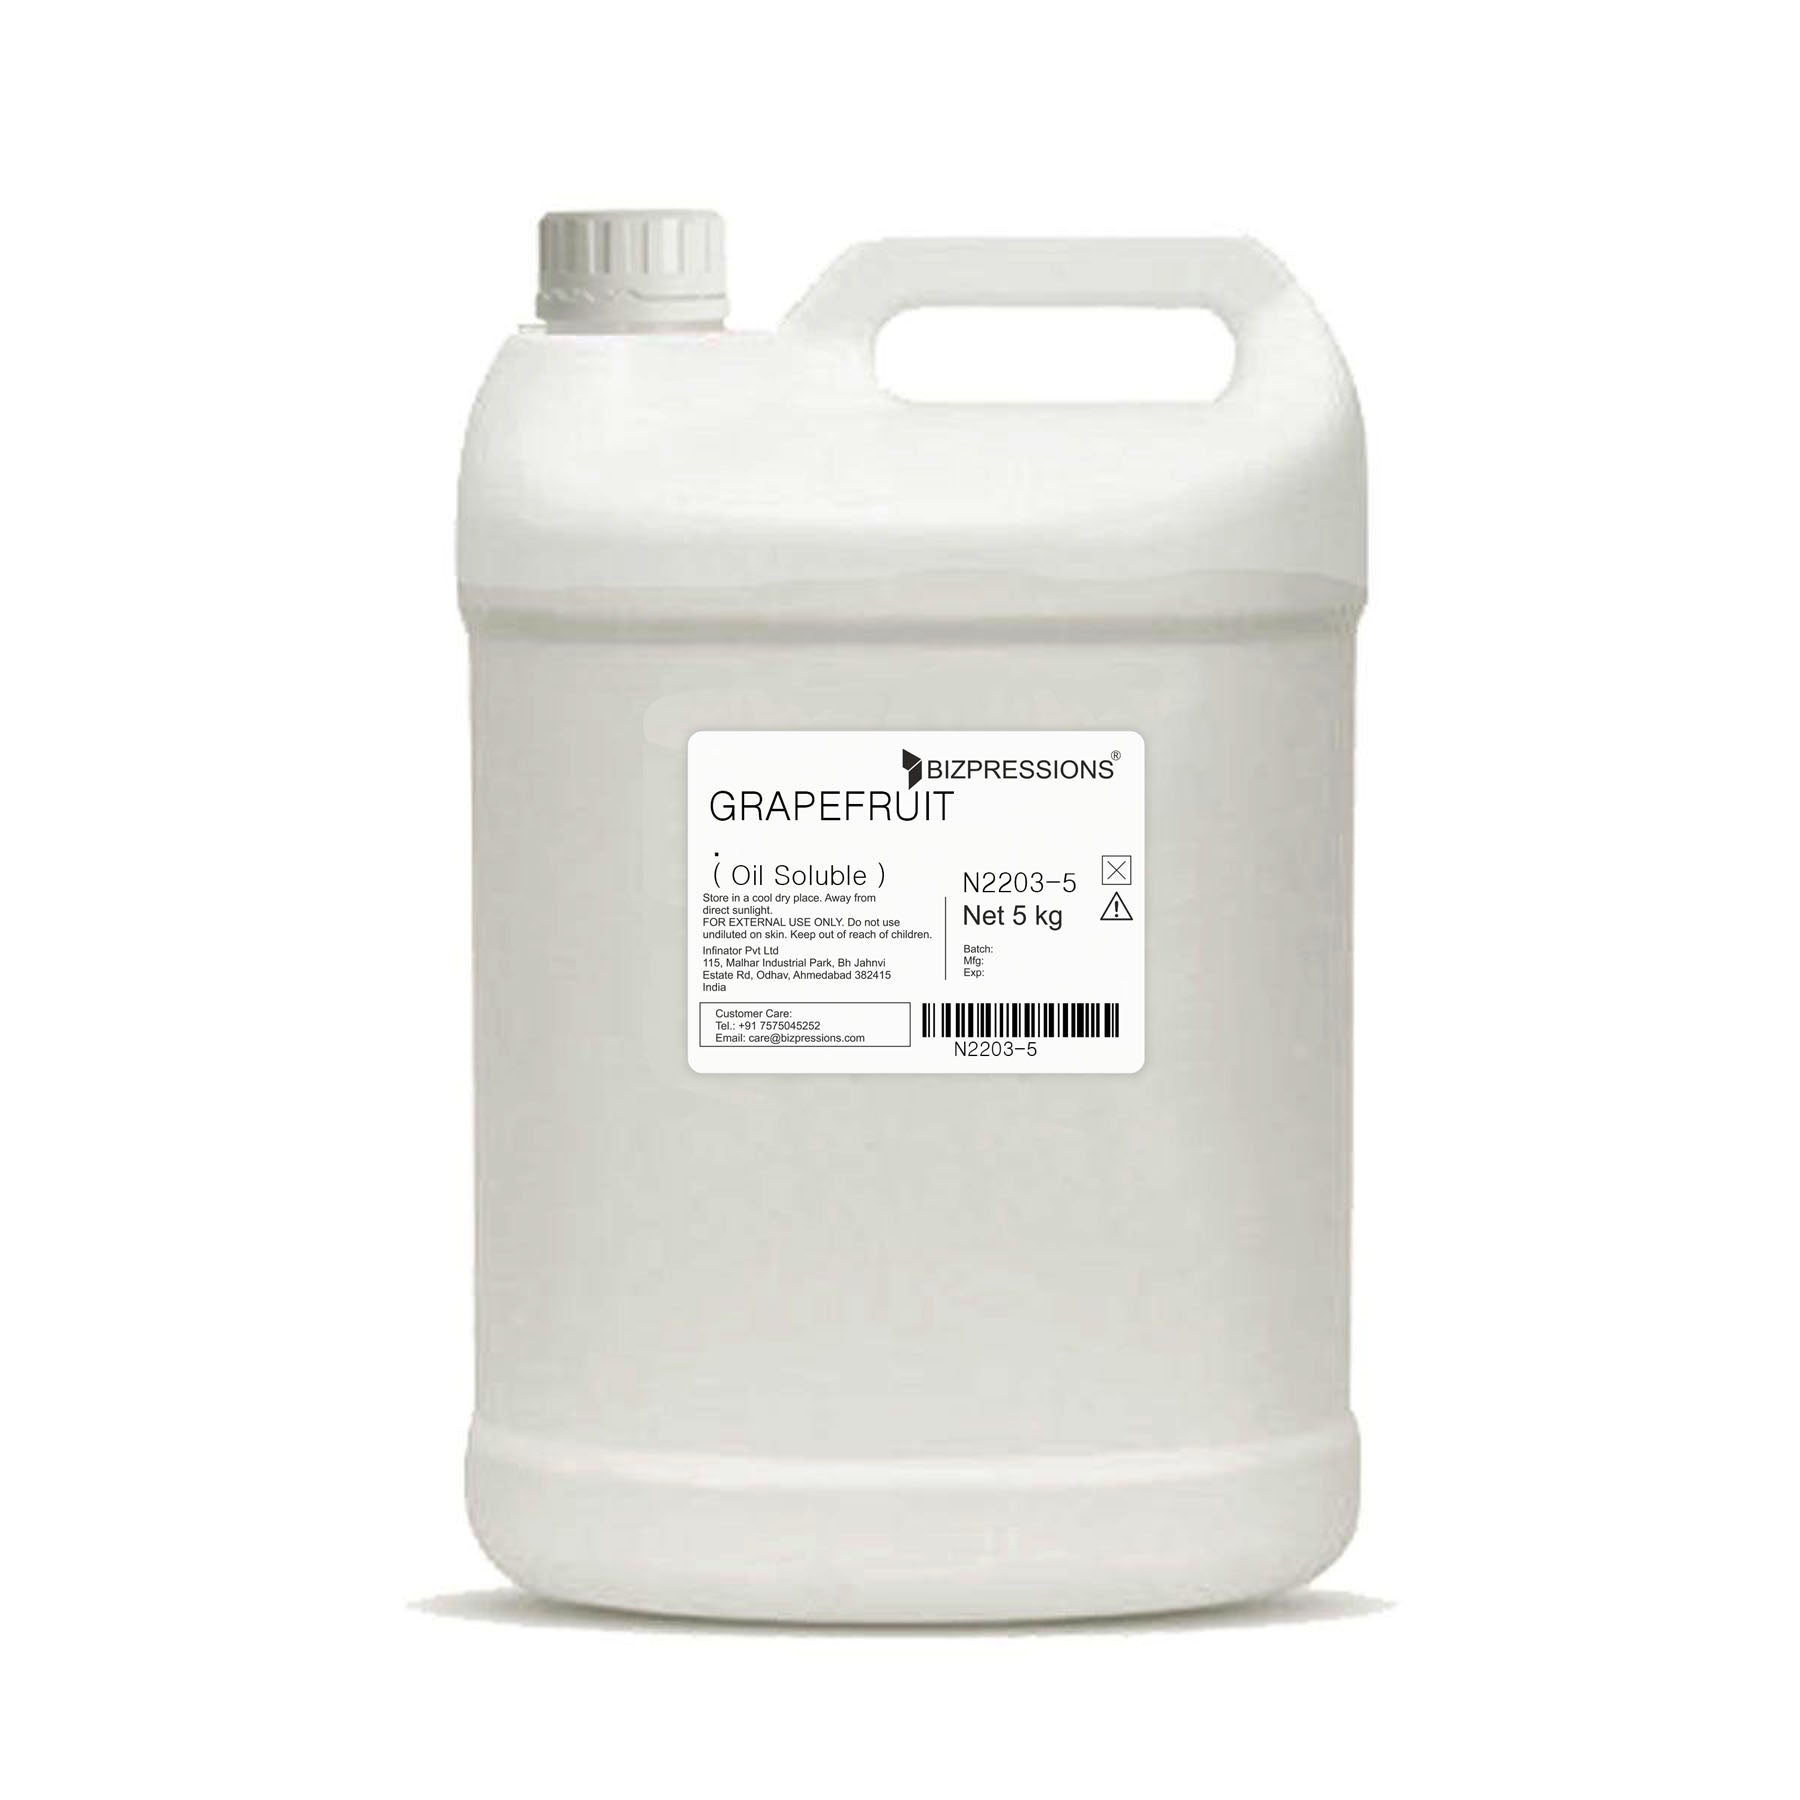 GRAPEFRUIT - Fragrance ( Oil Soluble ) - 5 kg